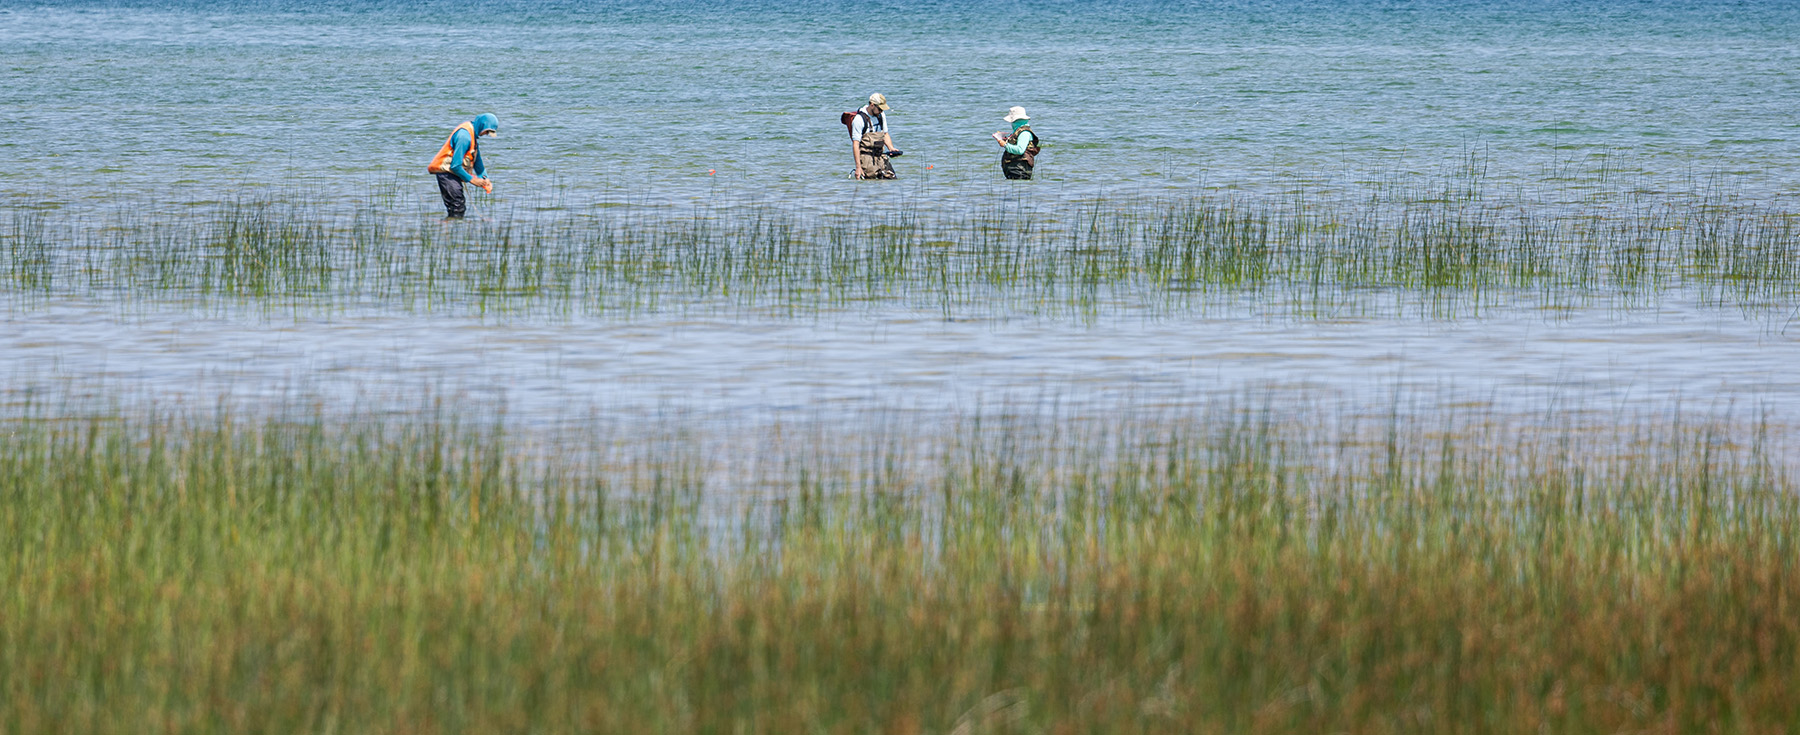 researchers in waders walking in a wetland